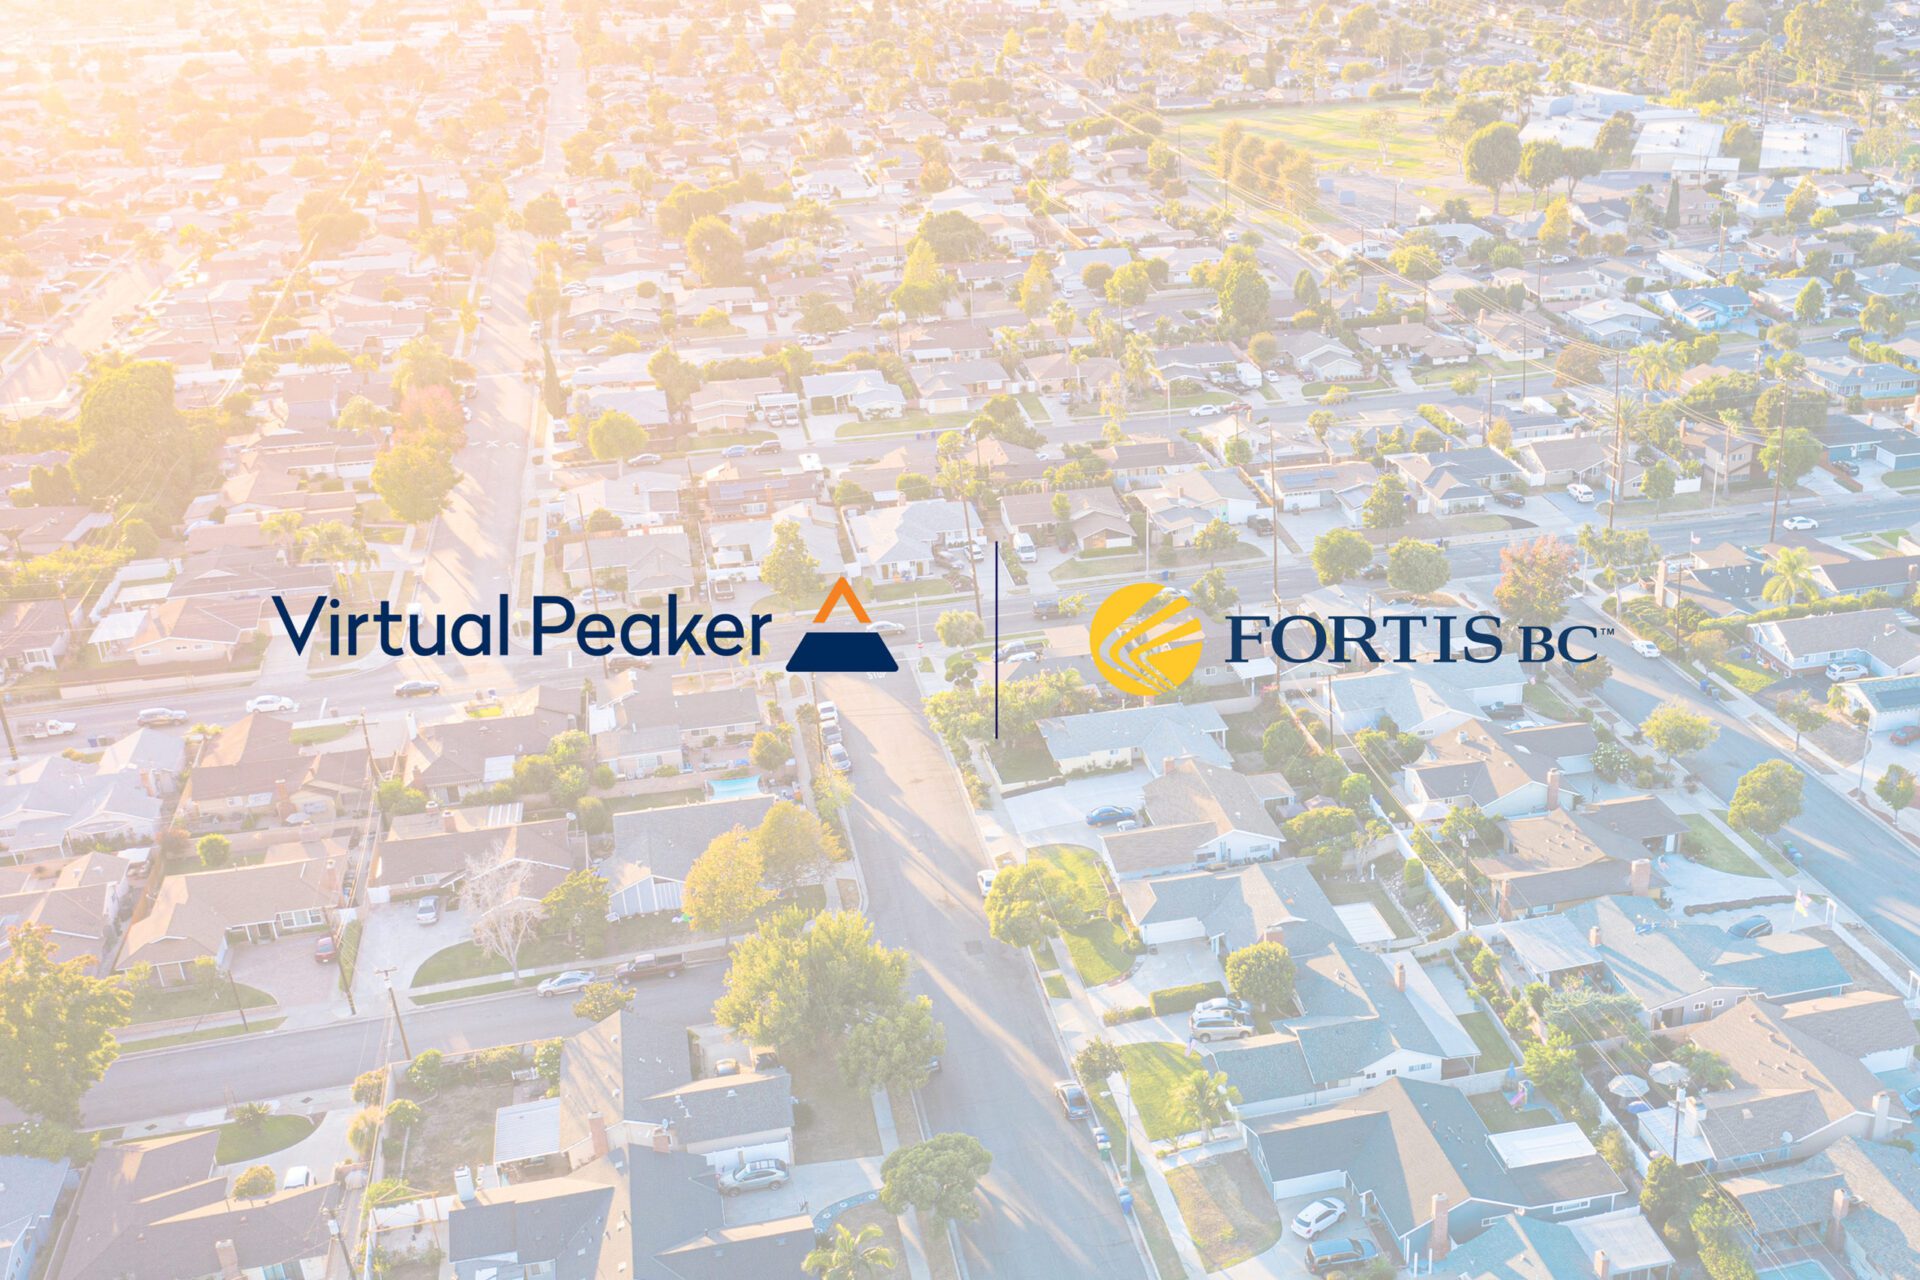 Virtual Peaker and FortisBC